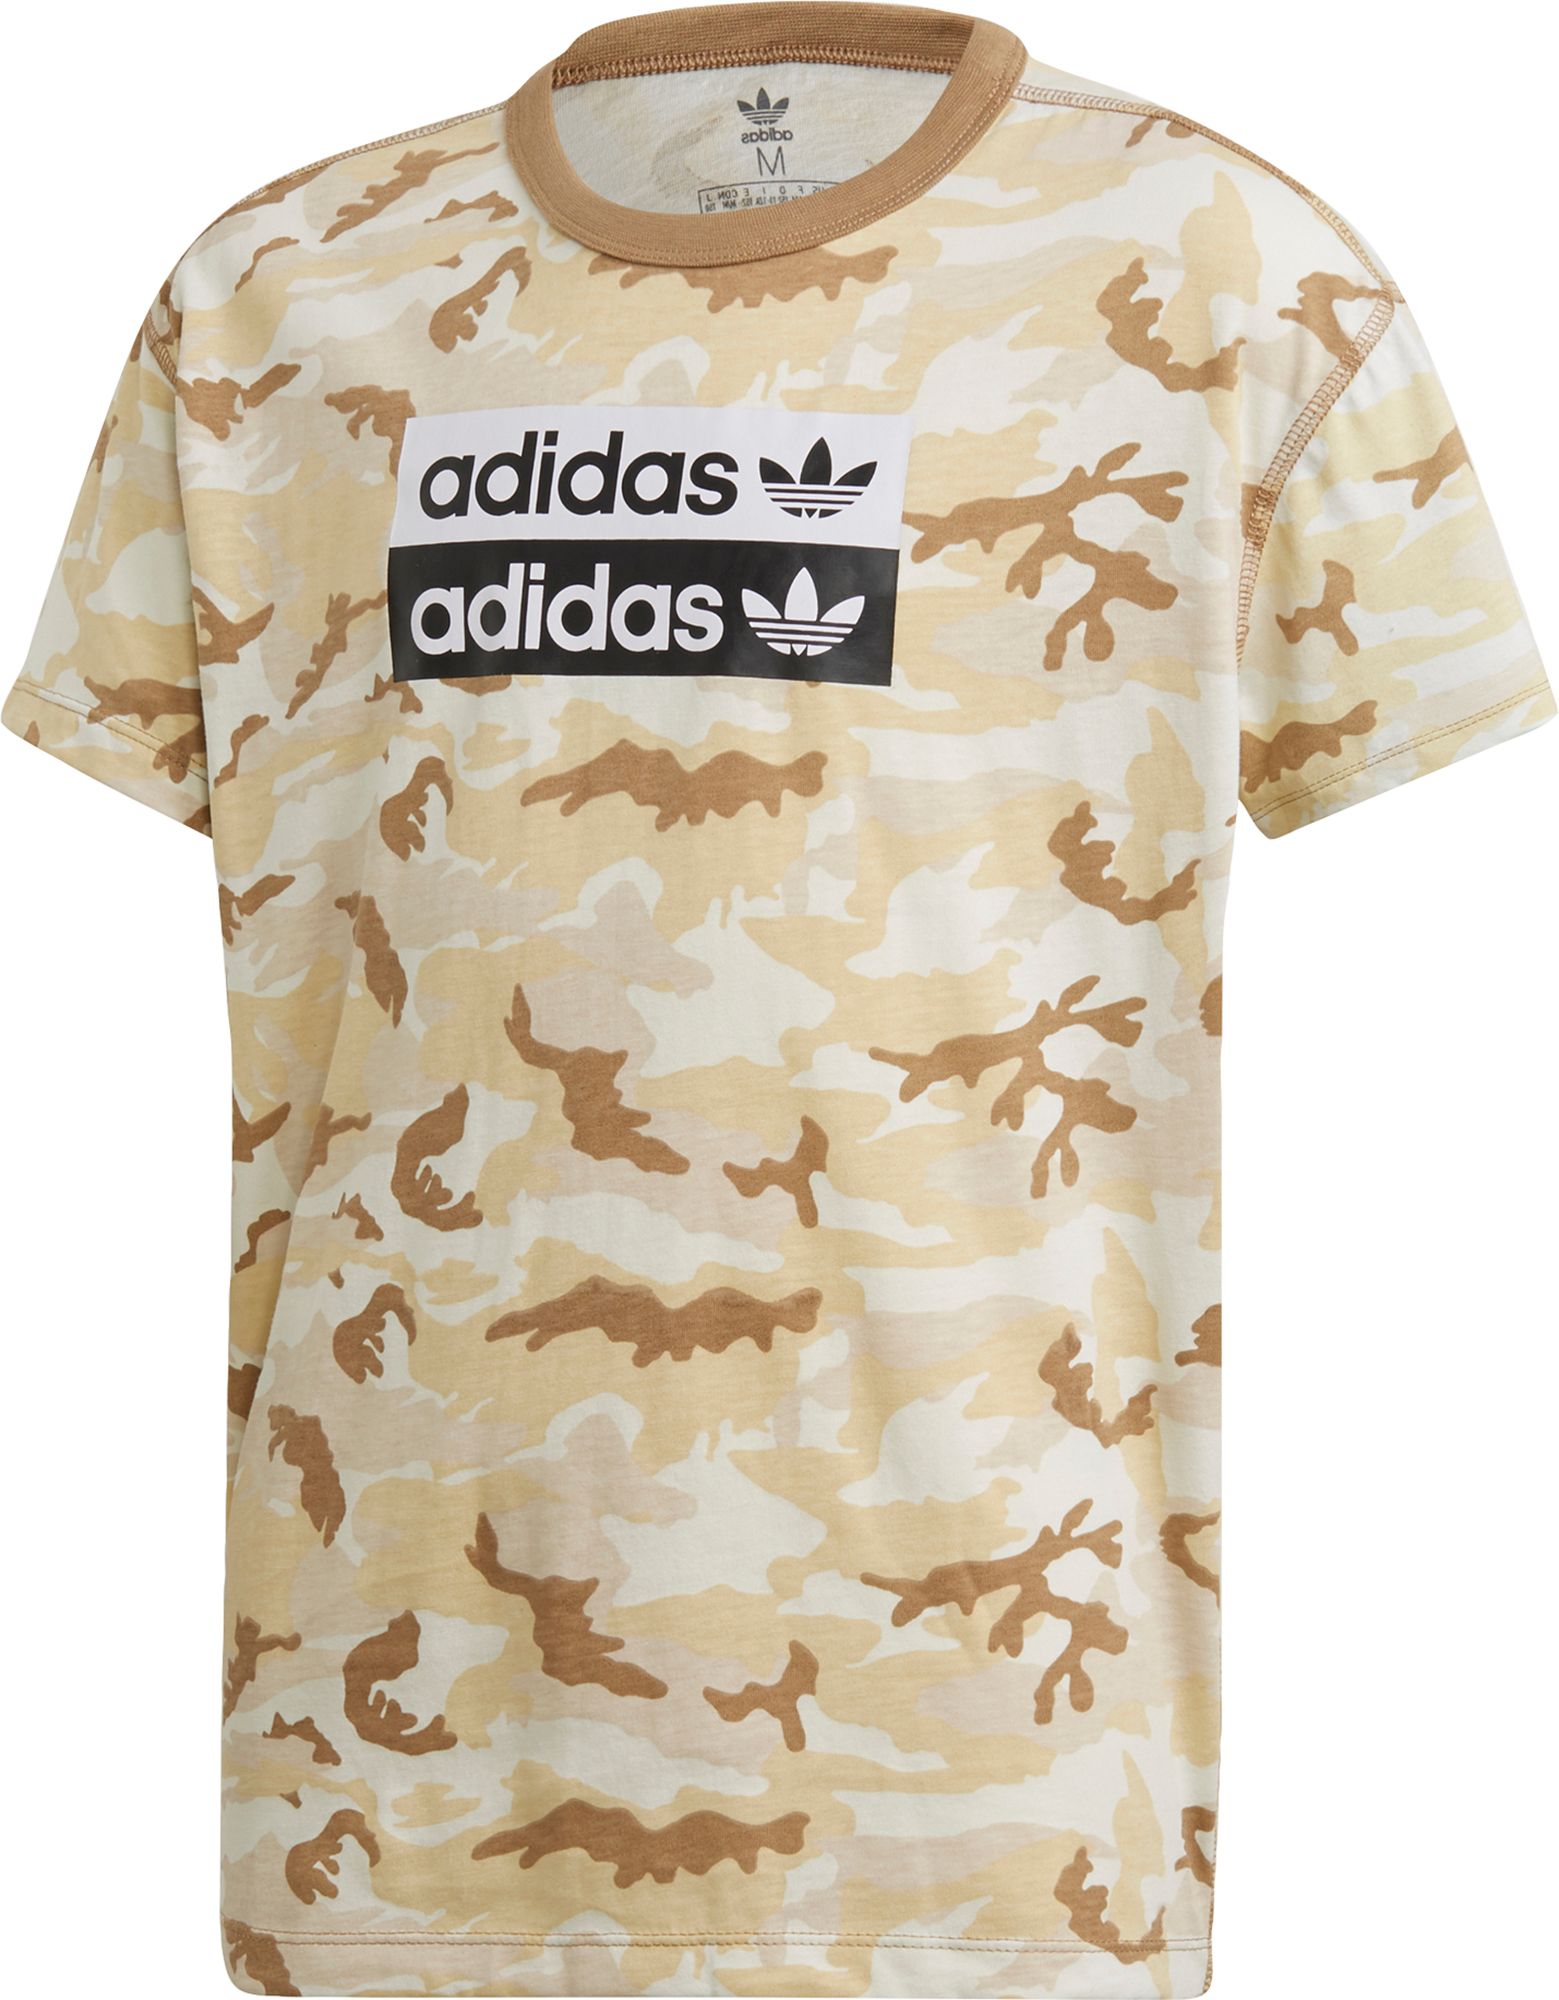 adidas camouflage shirt